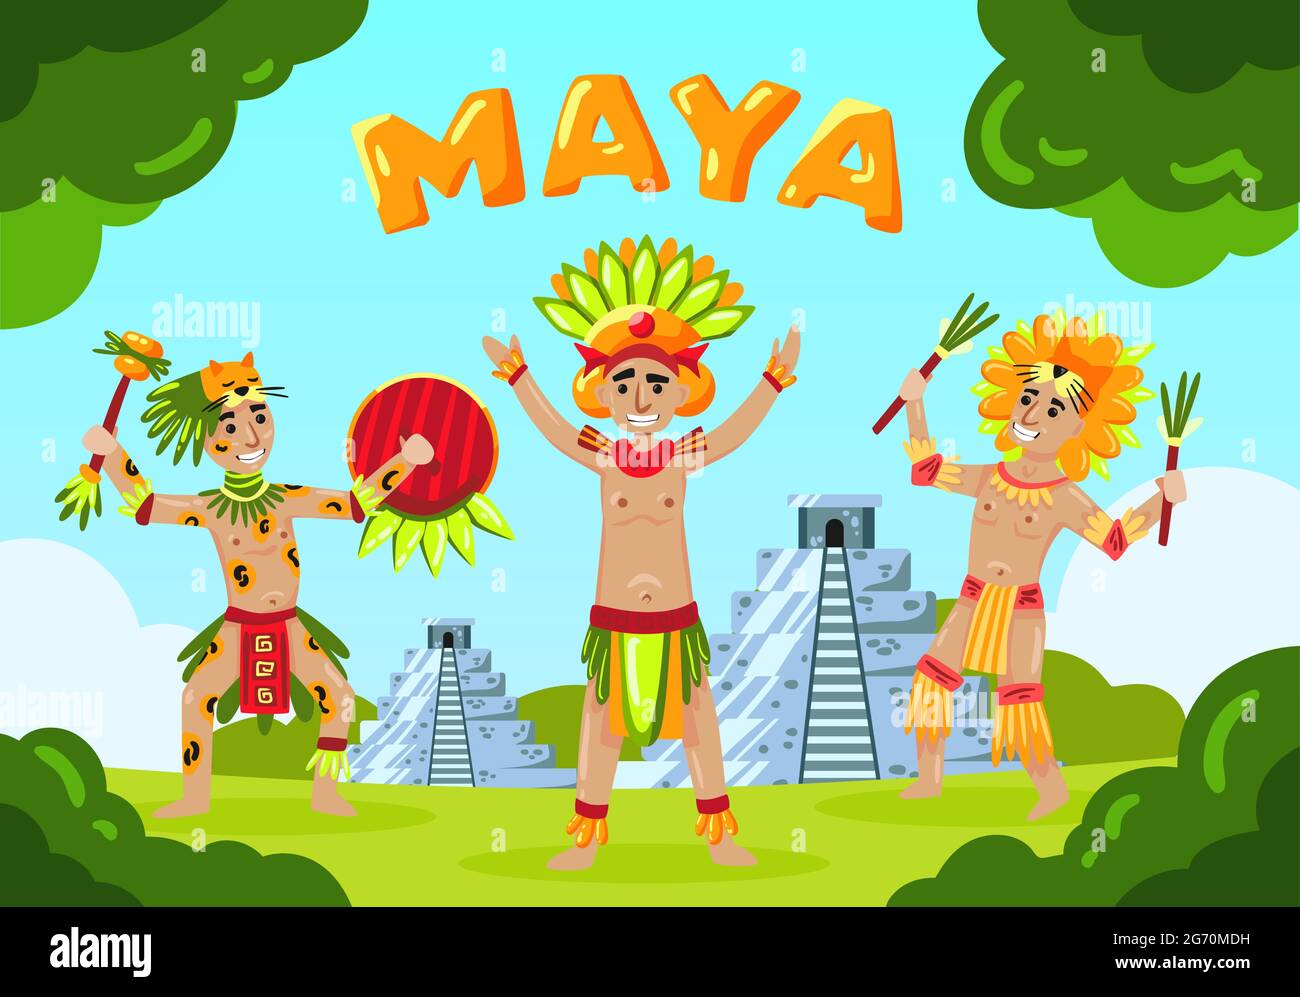 Maya Zivilisation Landschaft Komposition mit Text und Cartoon-Stil maya-Stamm Mitglieder vor Pyramiden Vektor-Illustration Stock Vektor